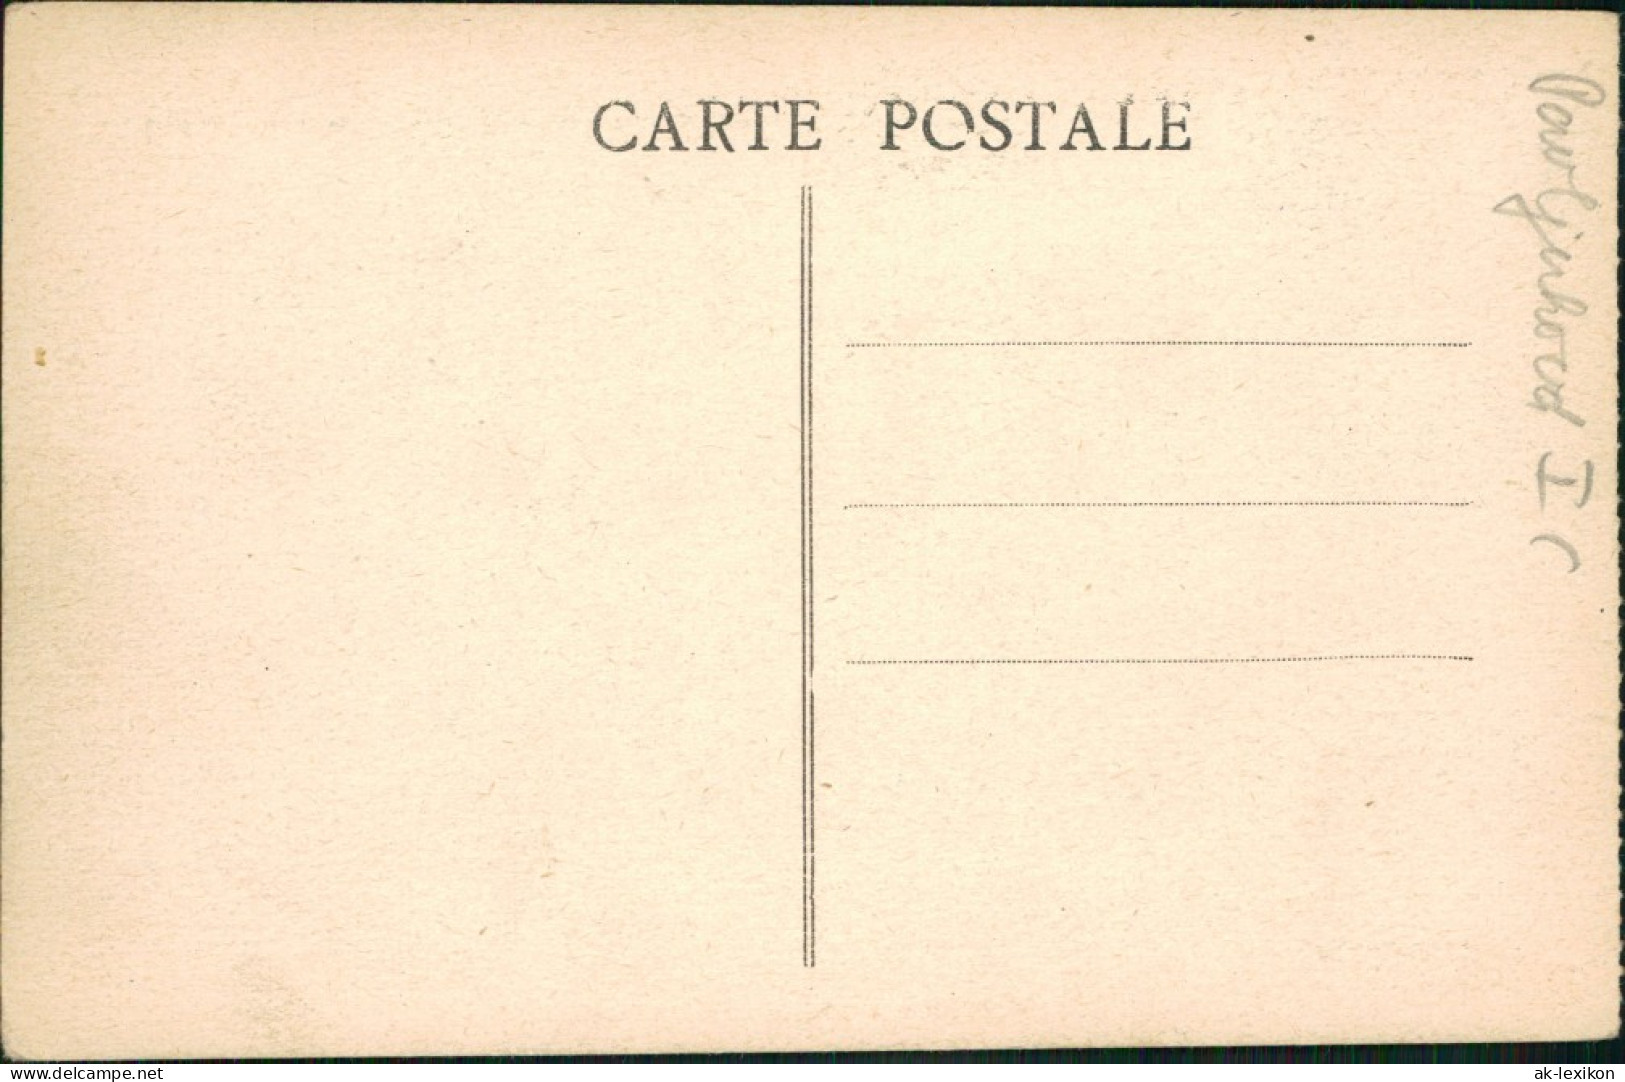 Postcard Bechar بشار ⴱⴻⵛⵛⴰⵔ Dans La Palmeraie 1930 - Non Classés